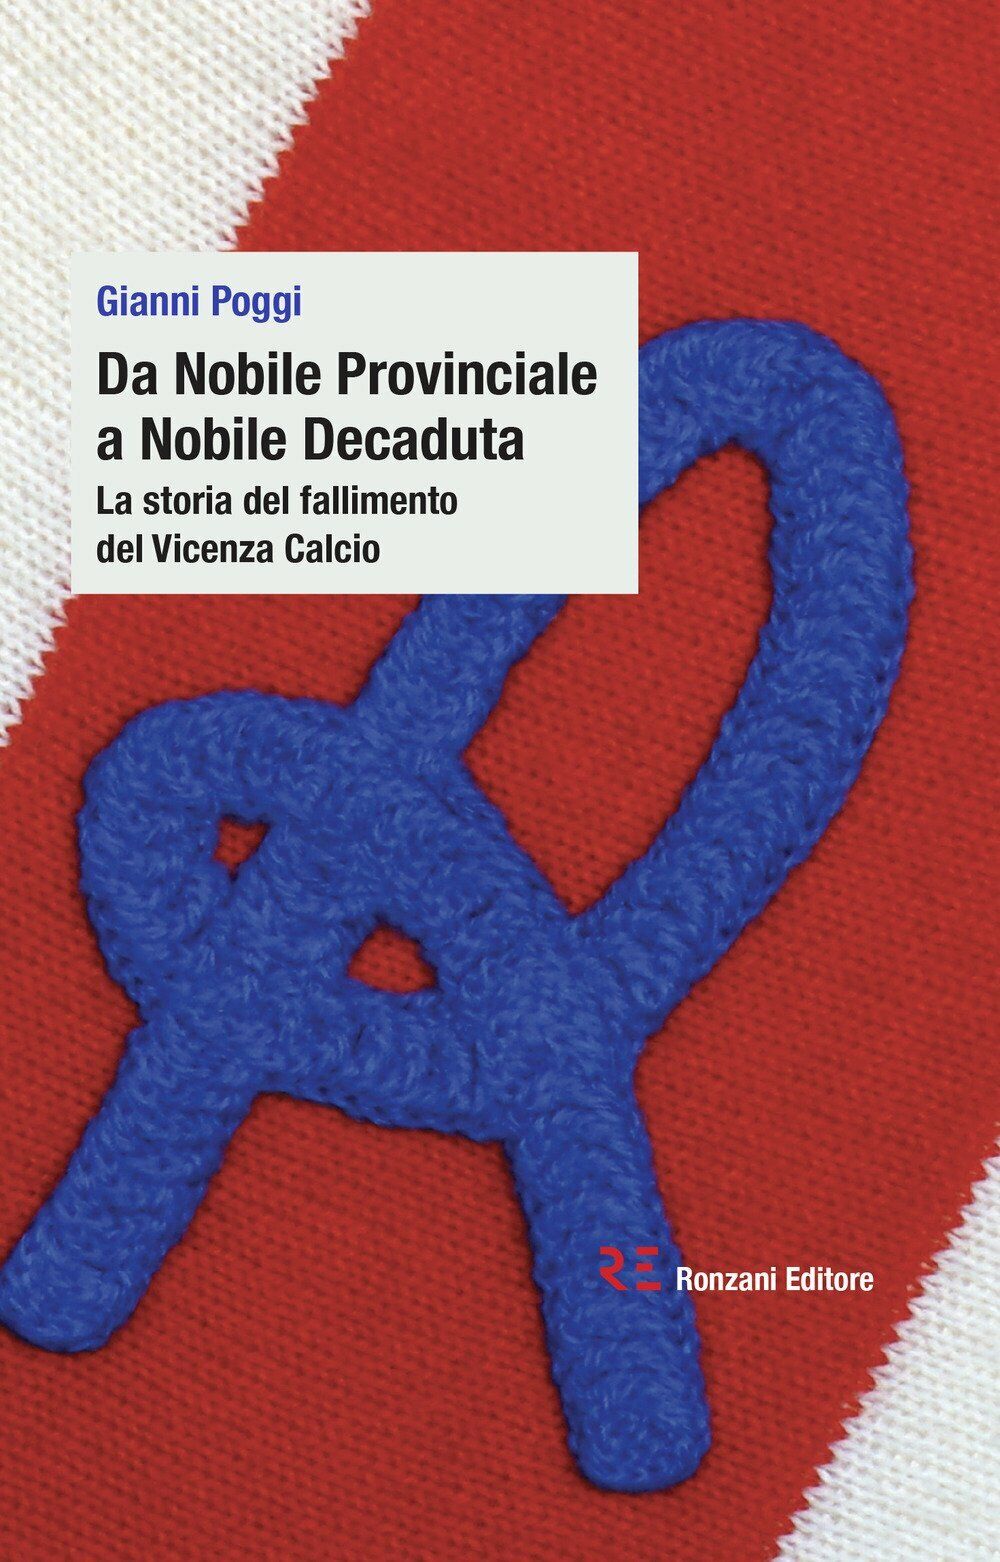 Da Nobile Provinciale a Nobile Decaduta - Gianni Poggi - Ronzani,2018